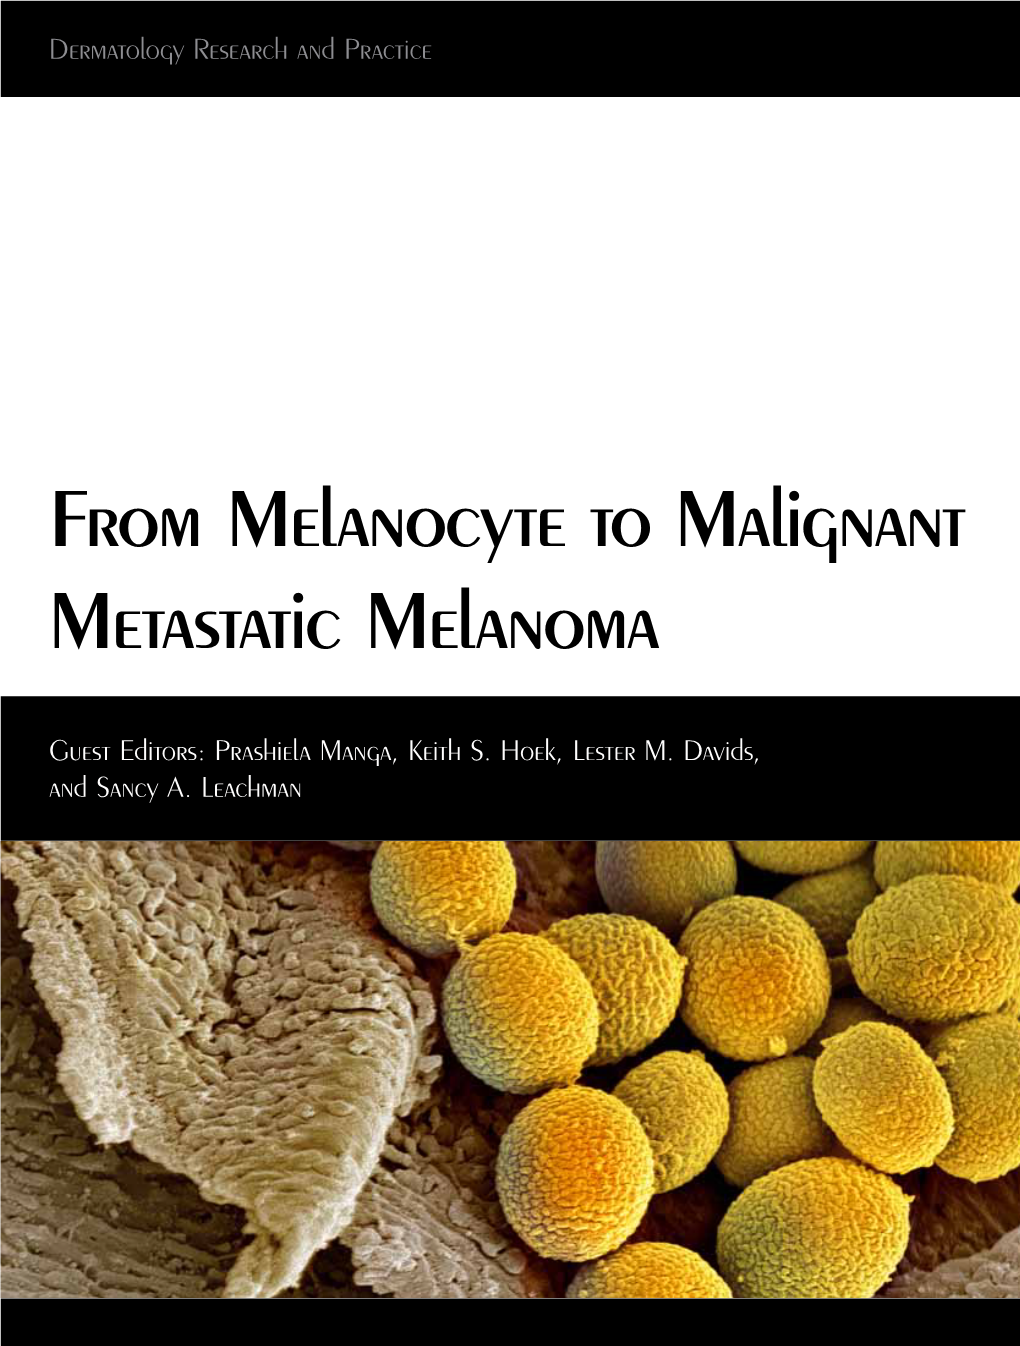 From Melanocyte to Malignant Metastatic Melanoma